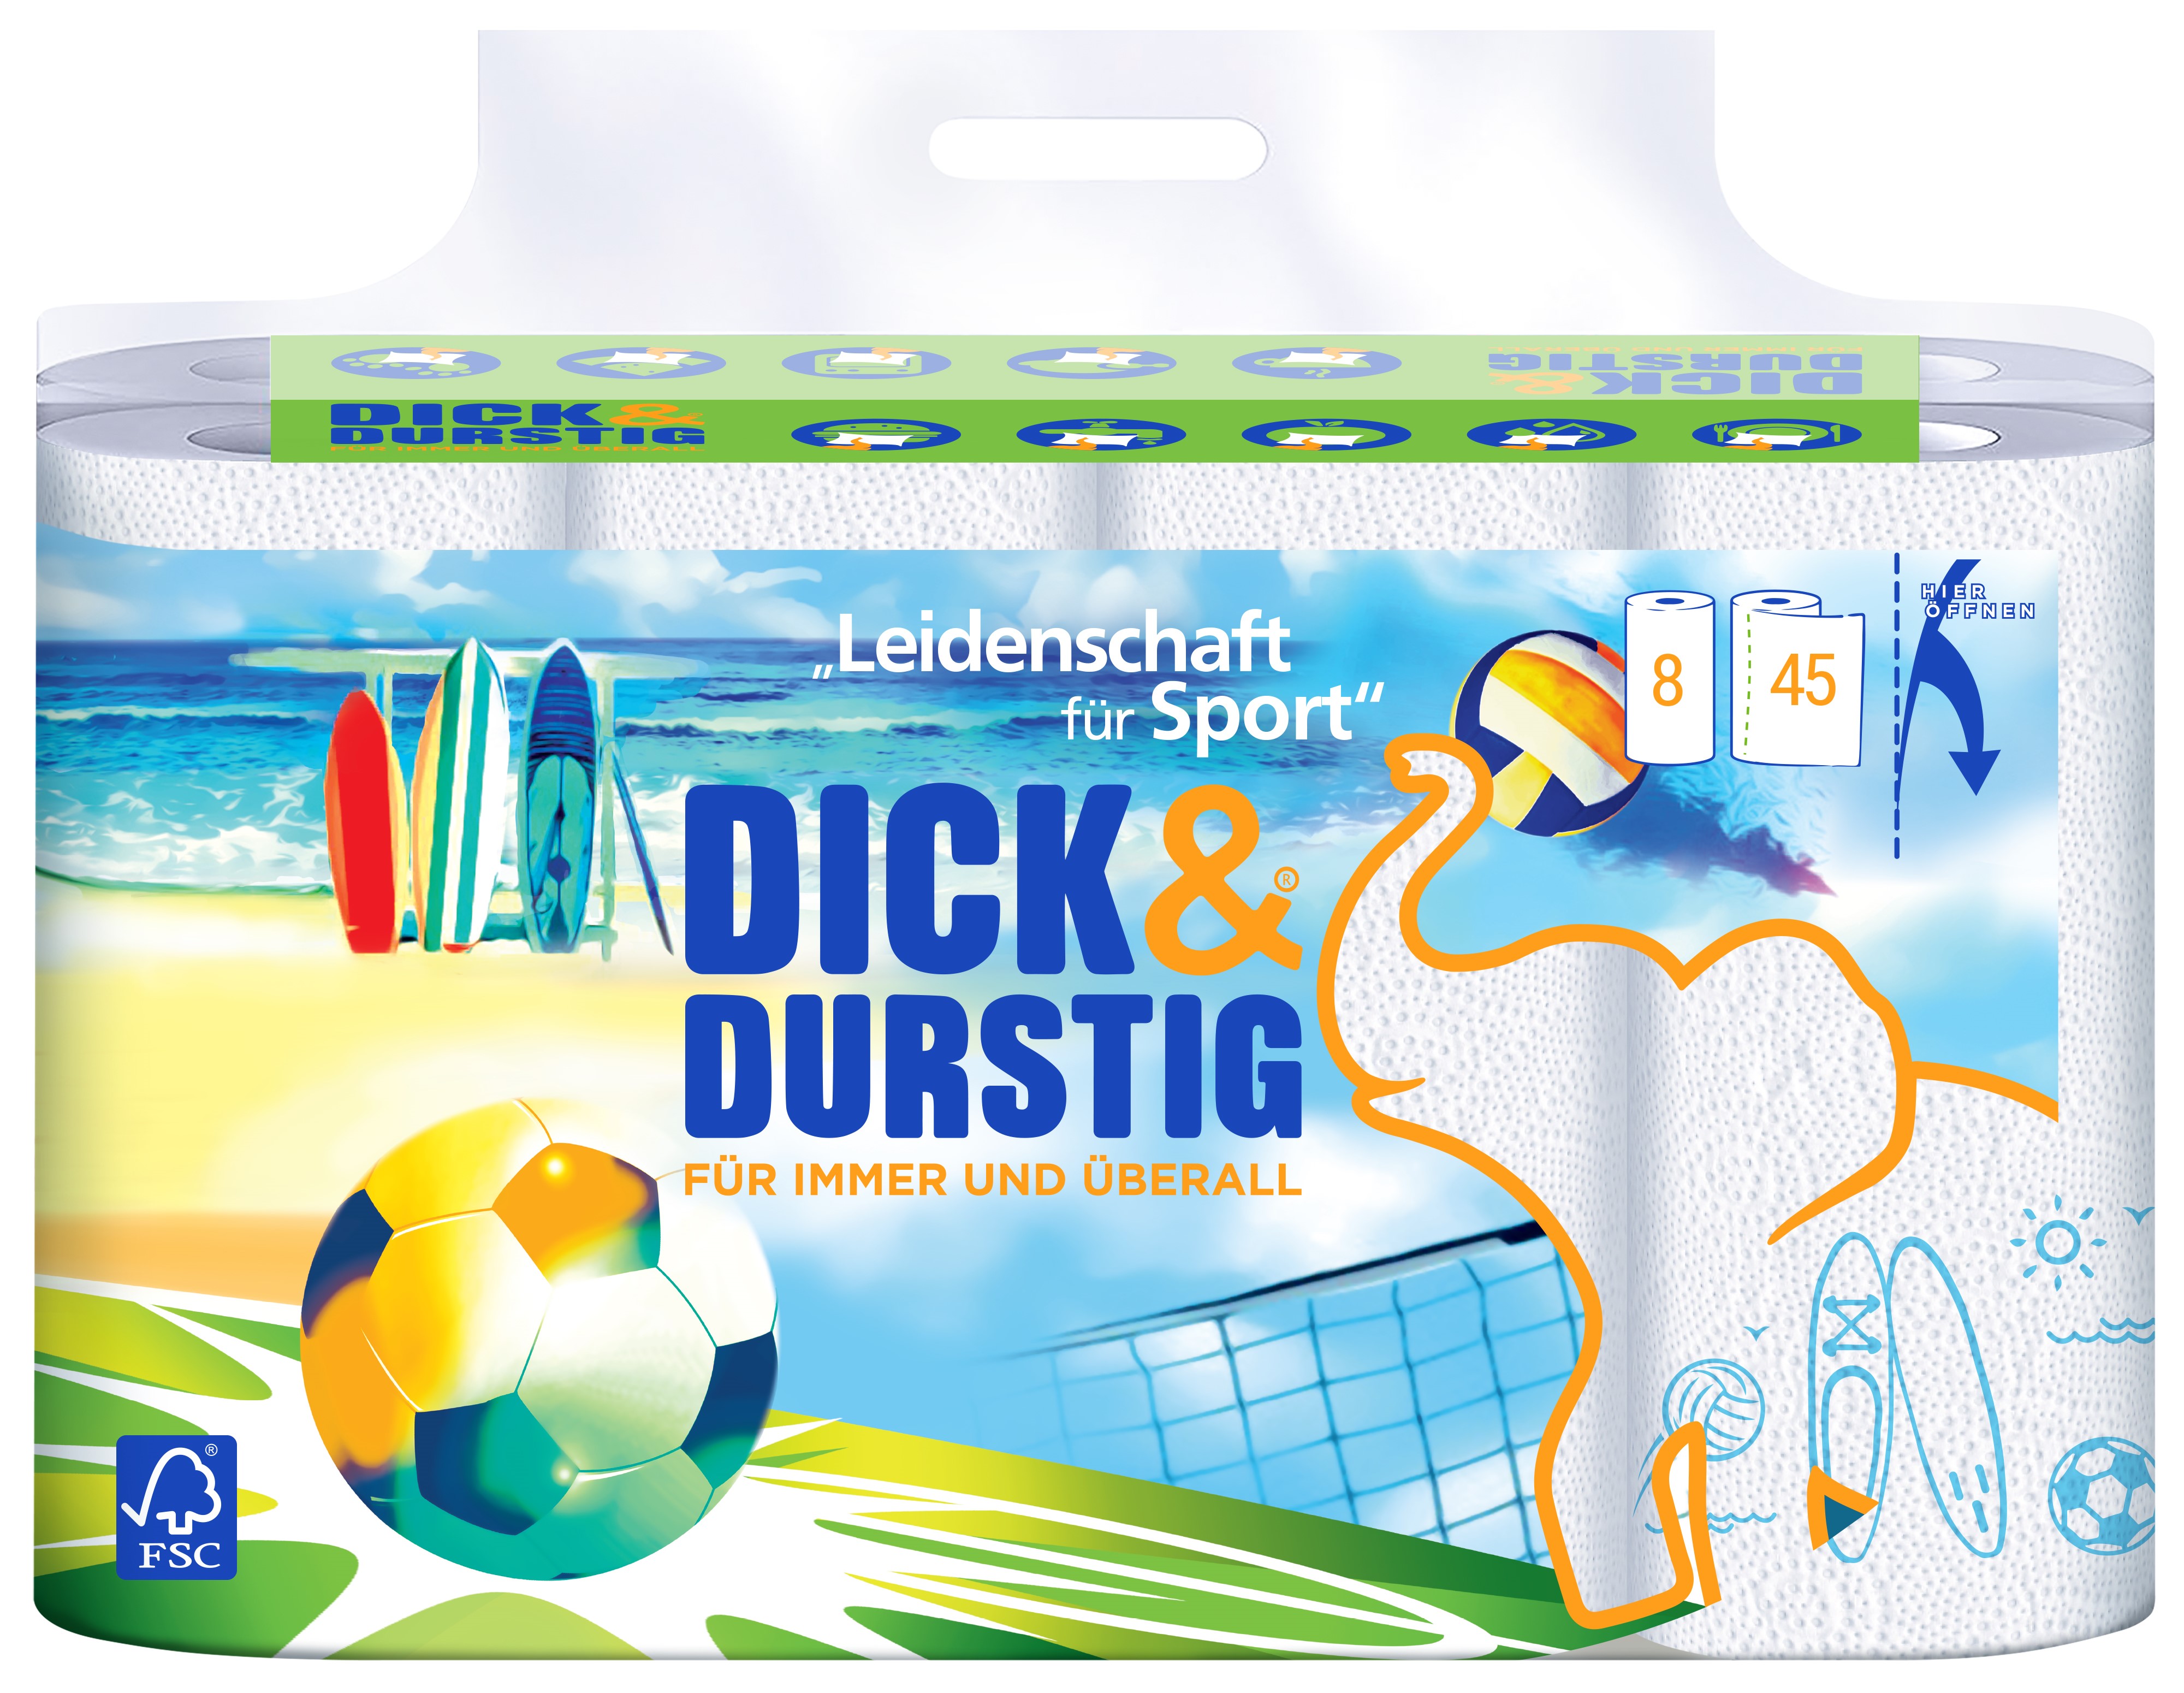 DICK&DURSTIG Edition Sport mit Dekor